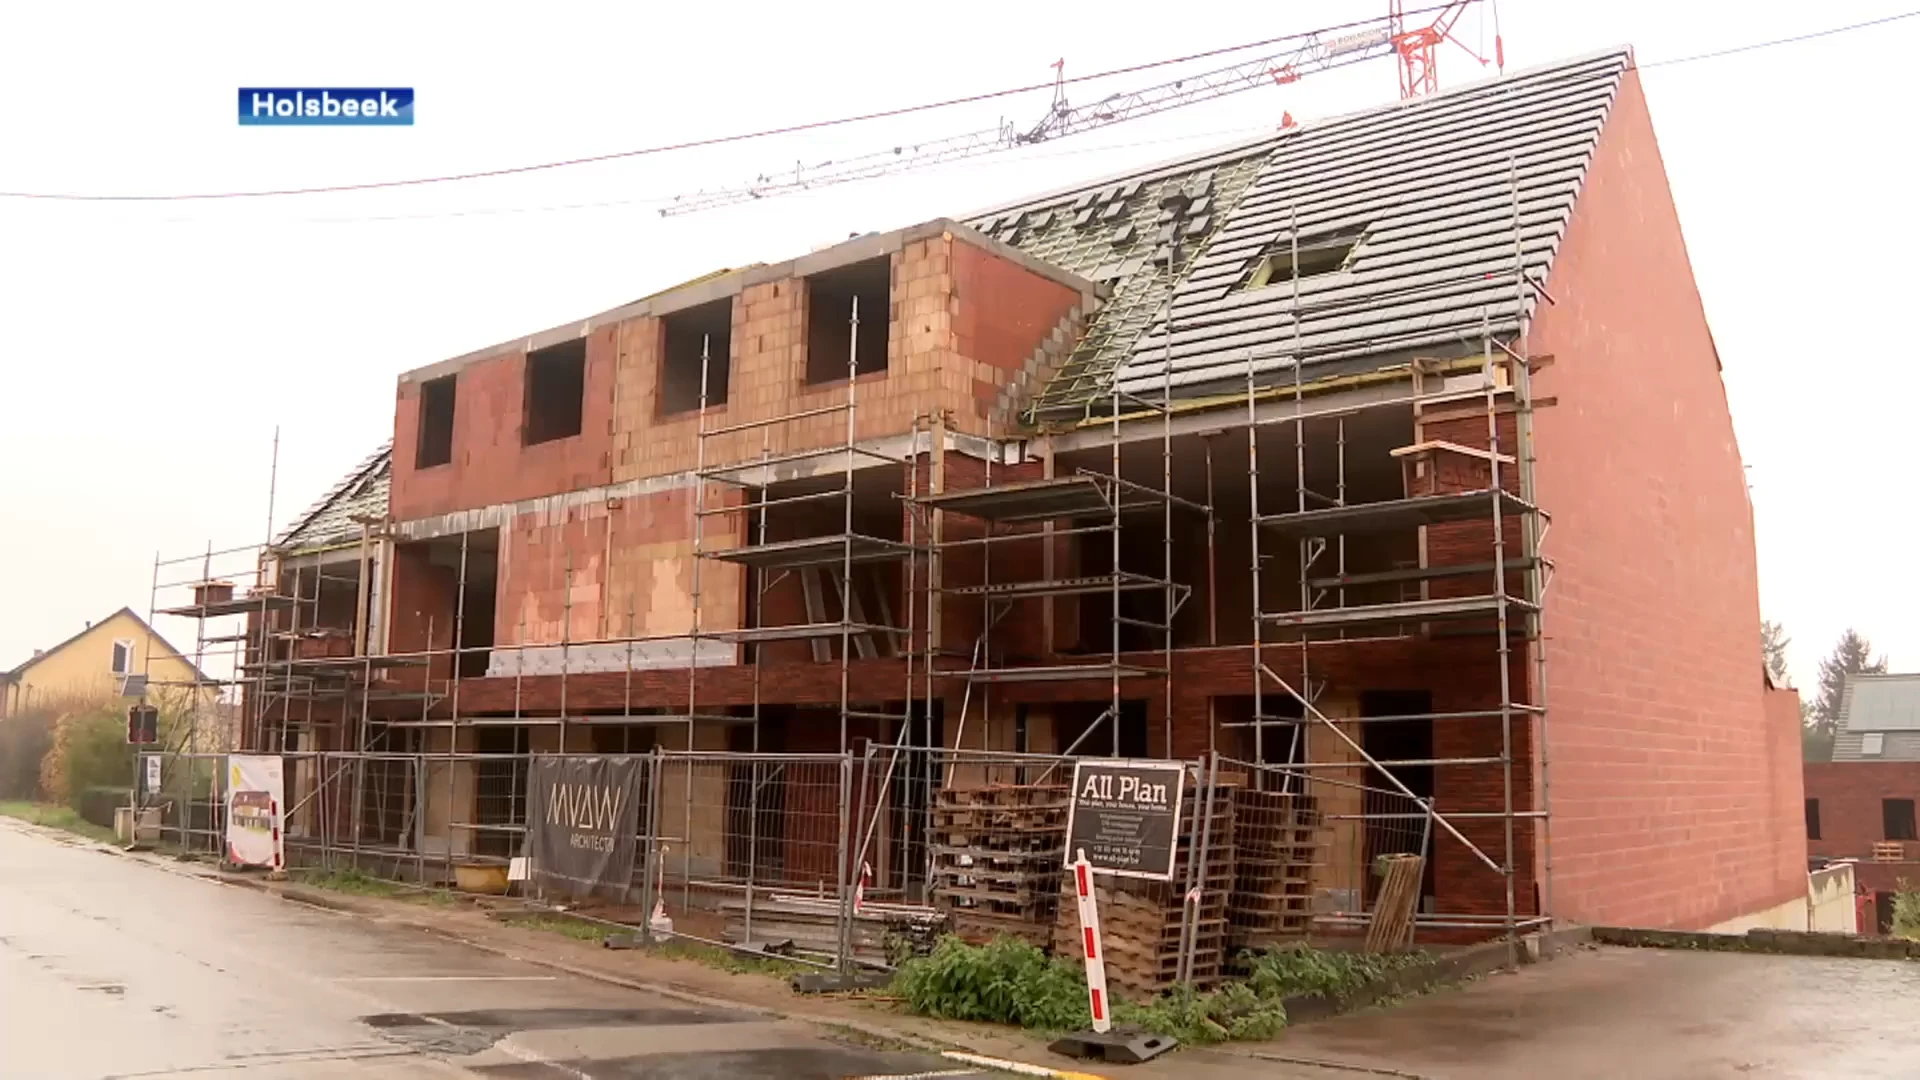 Holsbeek wil strenger toekijken op bouw nieuwe appartementsgebouwen: "Dit zijn dorpen, geen voorsteden"